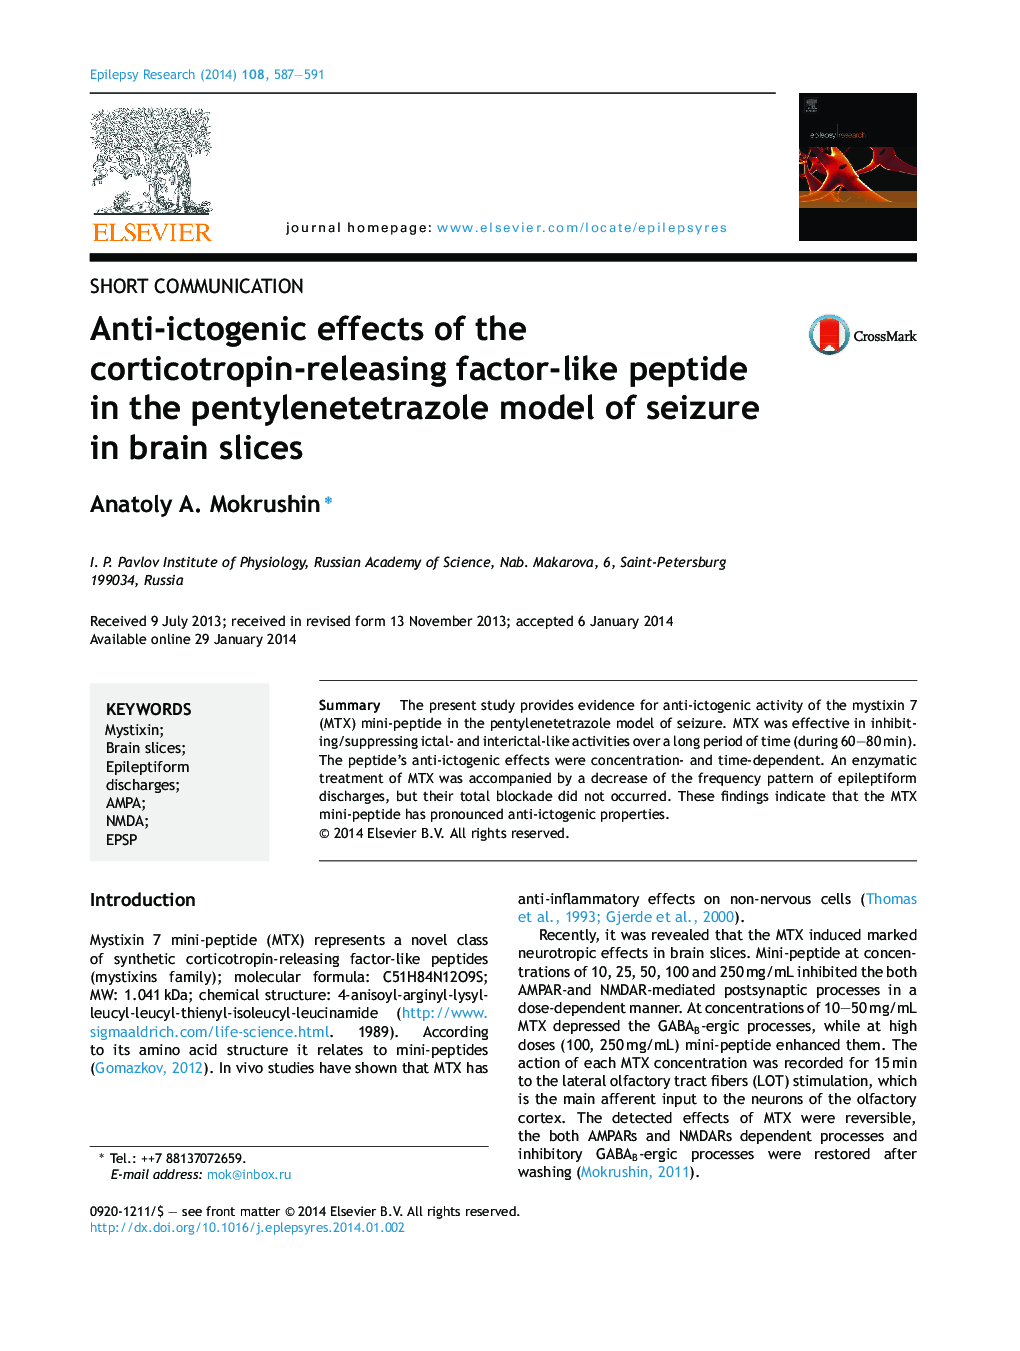 اثرات ضد ایزوتوپیک پپتید فاکتور آزاد کننده کورتیکوتروپین در مدل پنتیلن تترازول تشنج در تکه های مغزی 